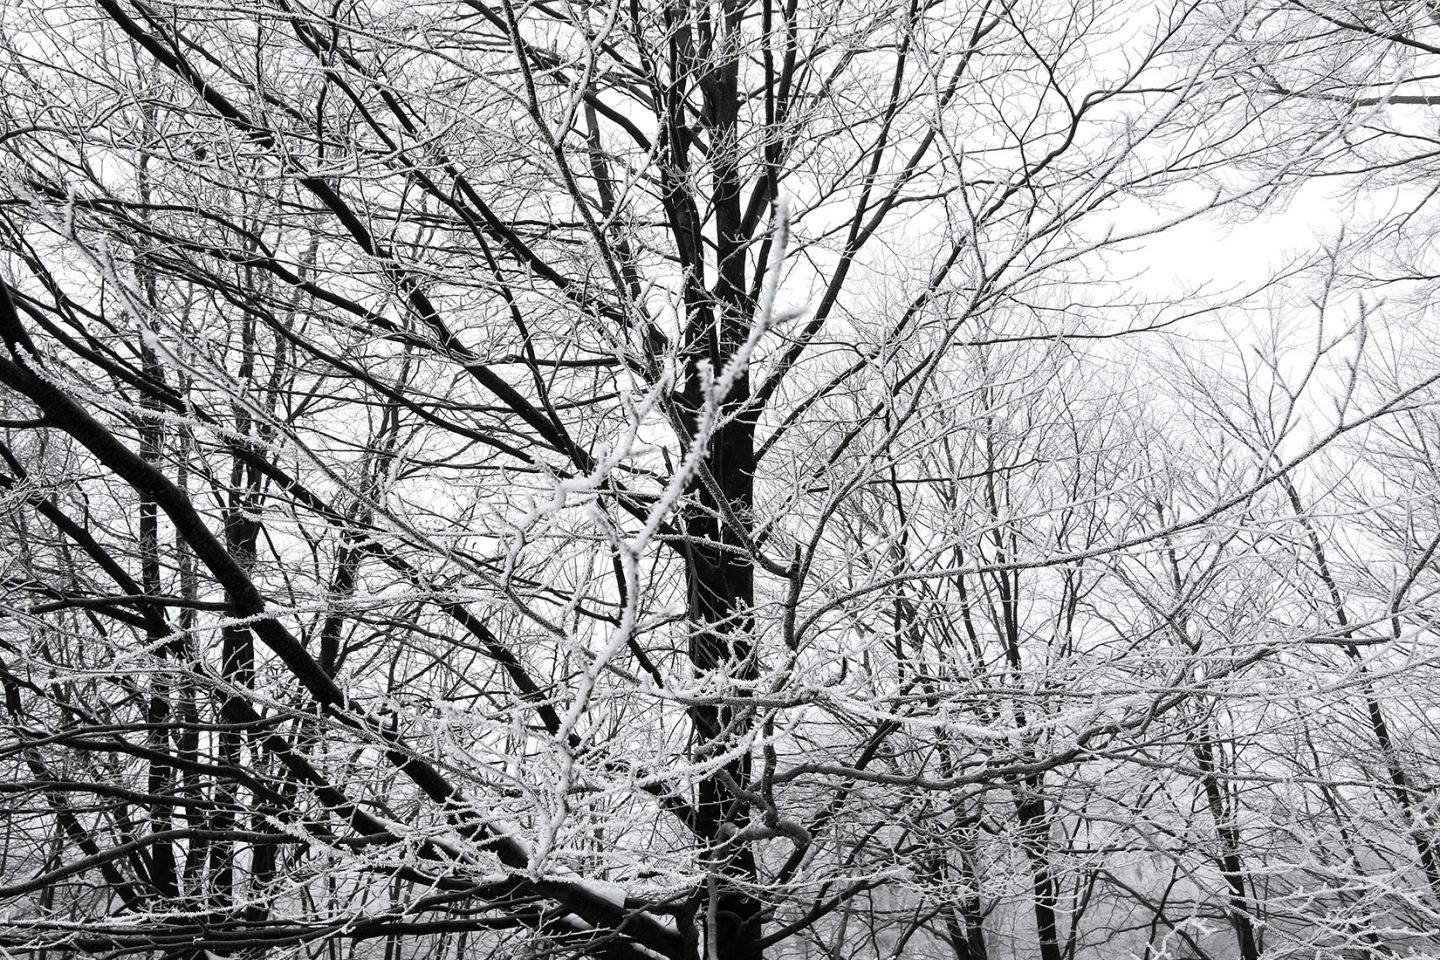 Ice on frozen trees